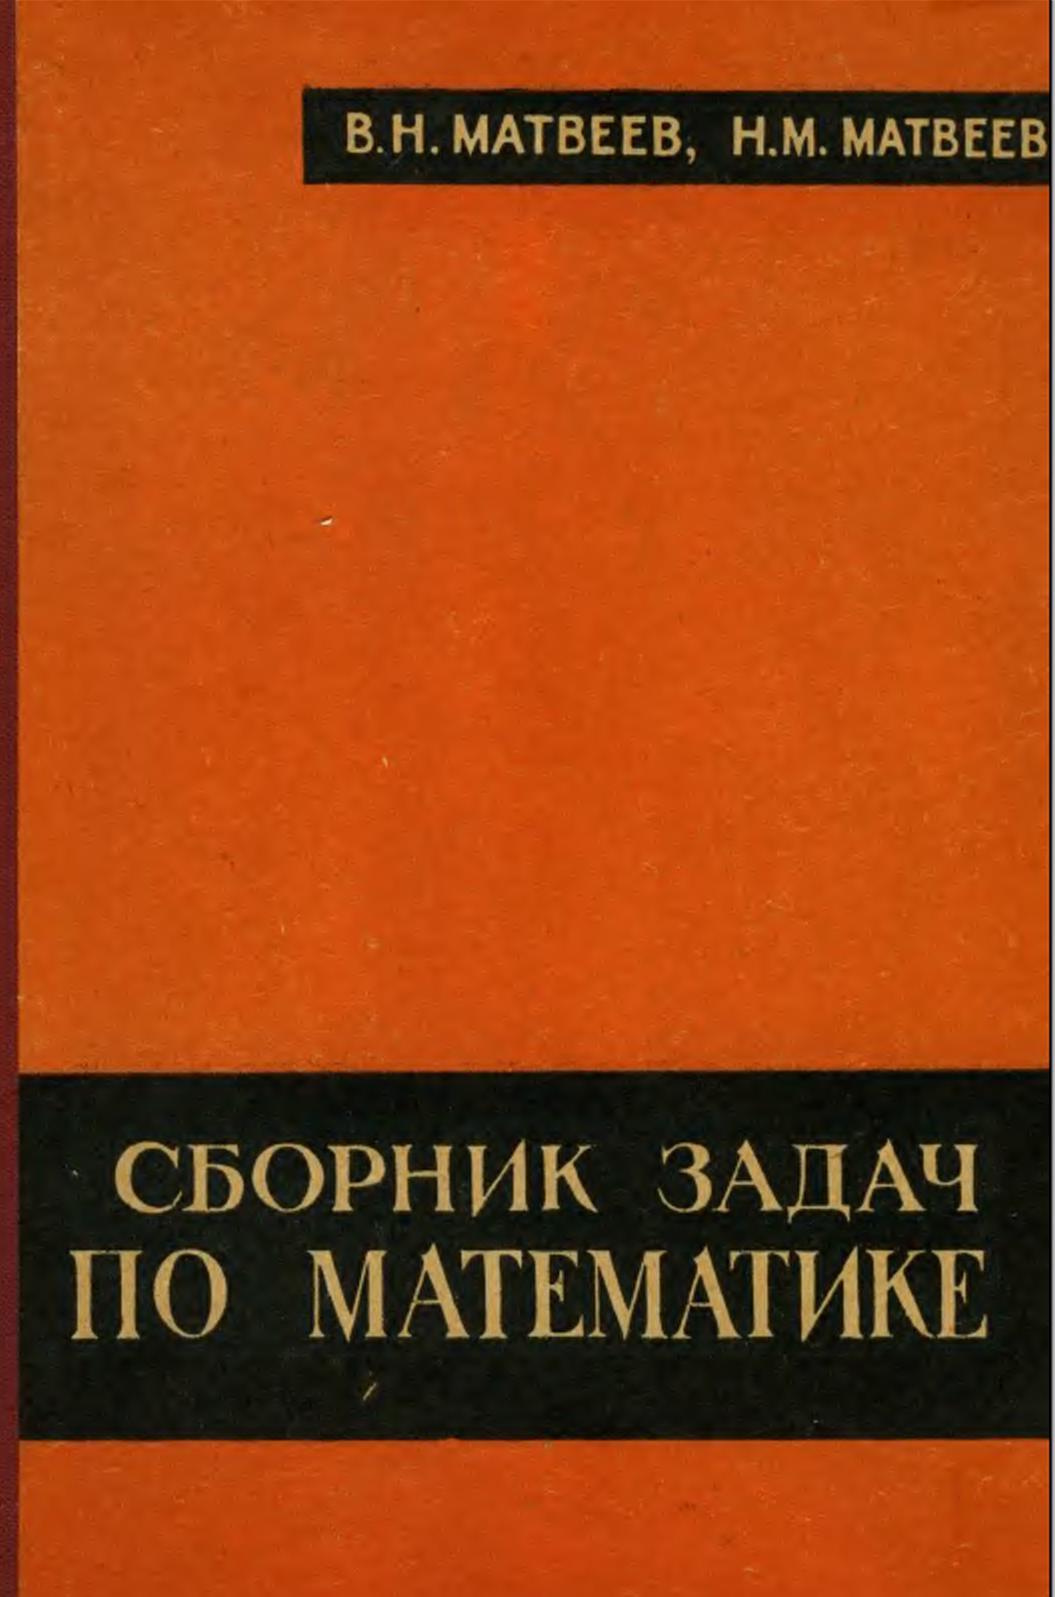 Сборник задач по математике с методами решений, Матвеев В.Н., Матвеев Н.М., 1968